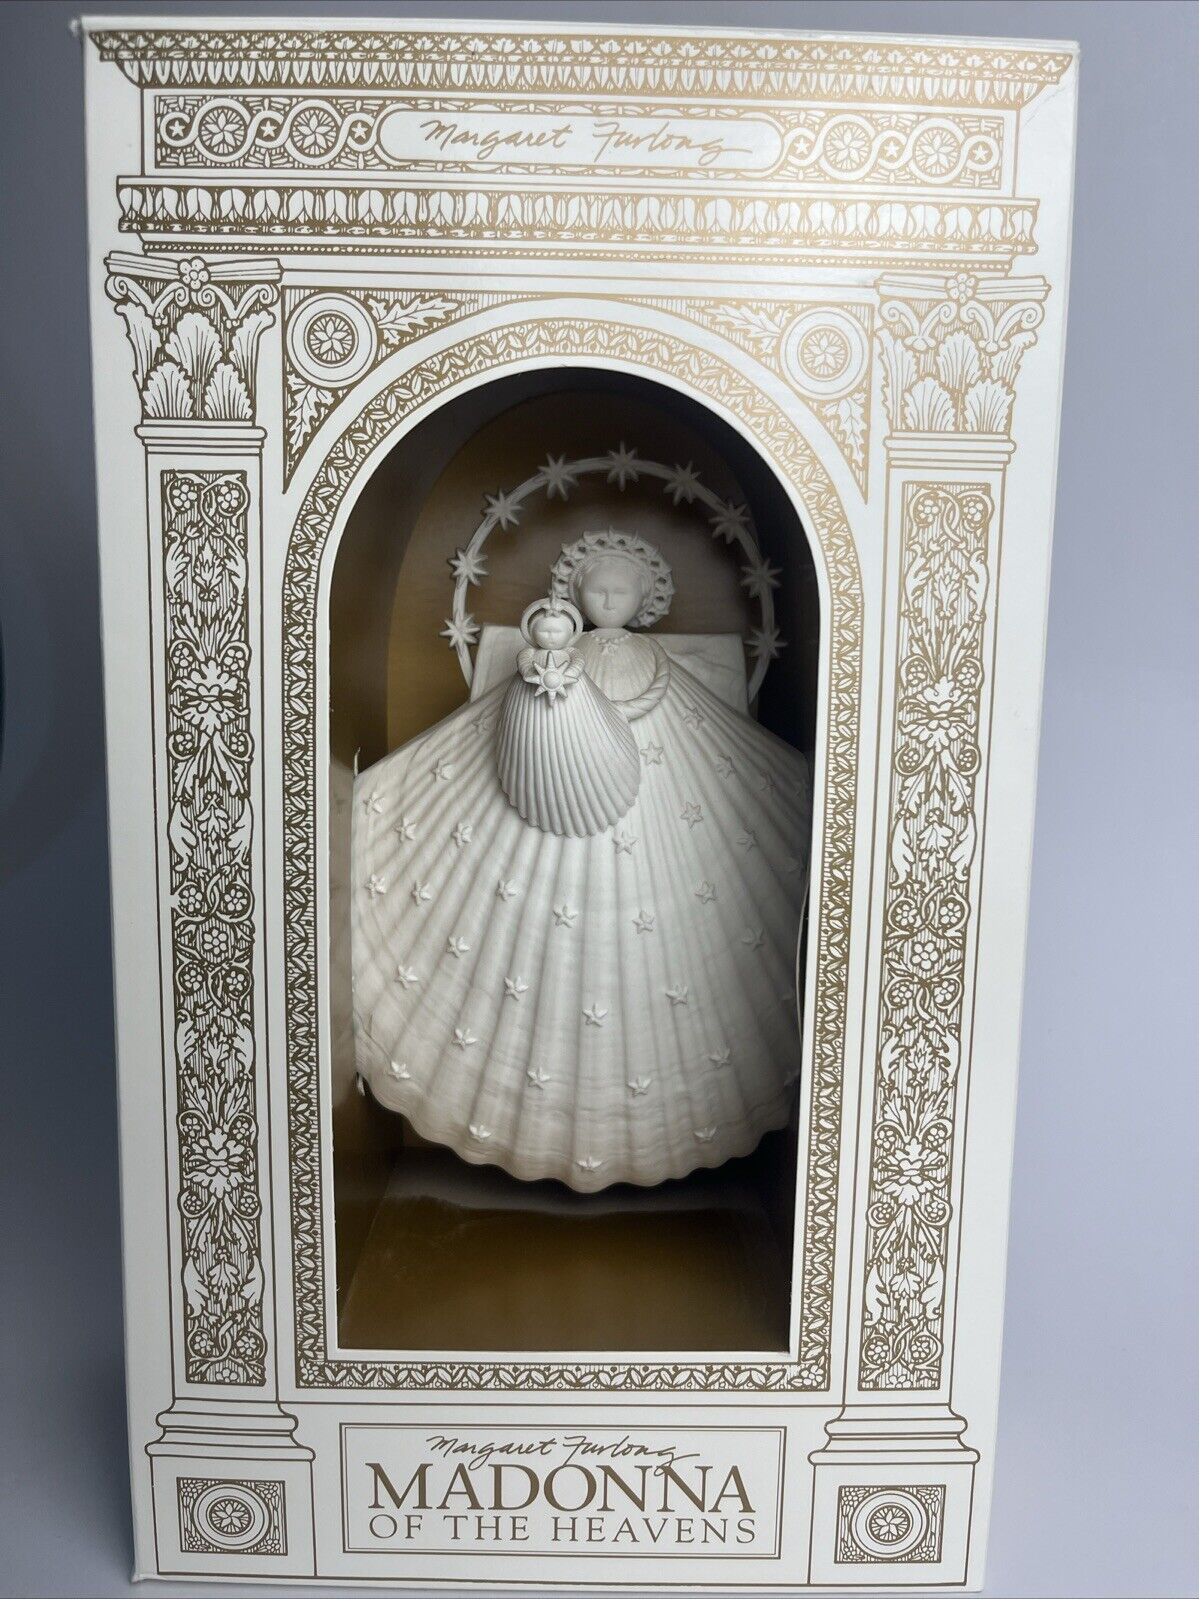 VTG Margaret Furlong MADONNA OF THE HEAVENS Porcelain Angel Shell Figurine New